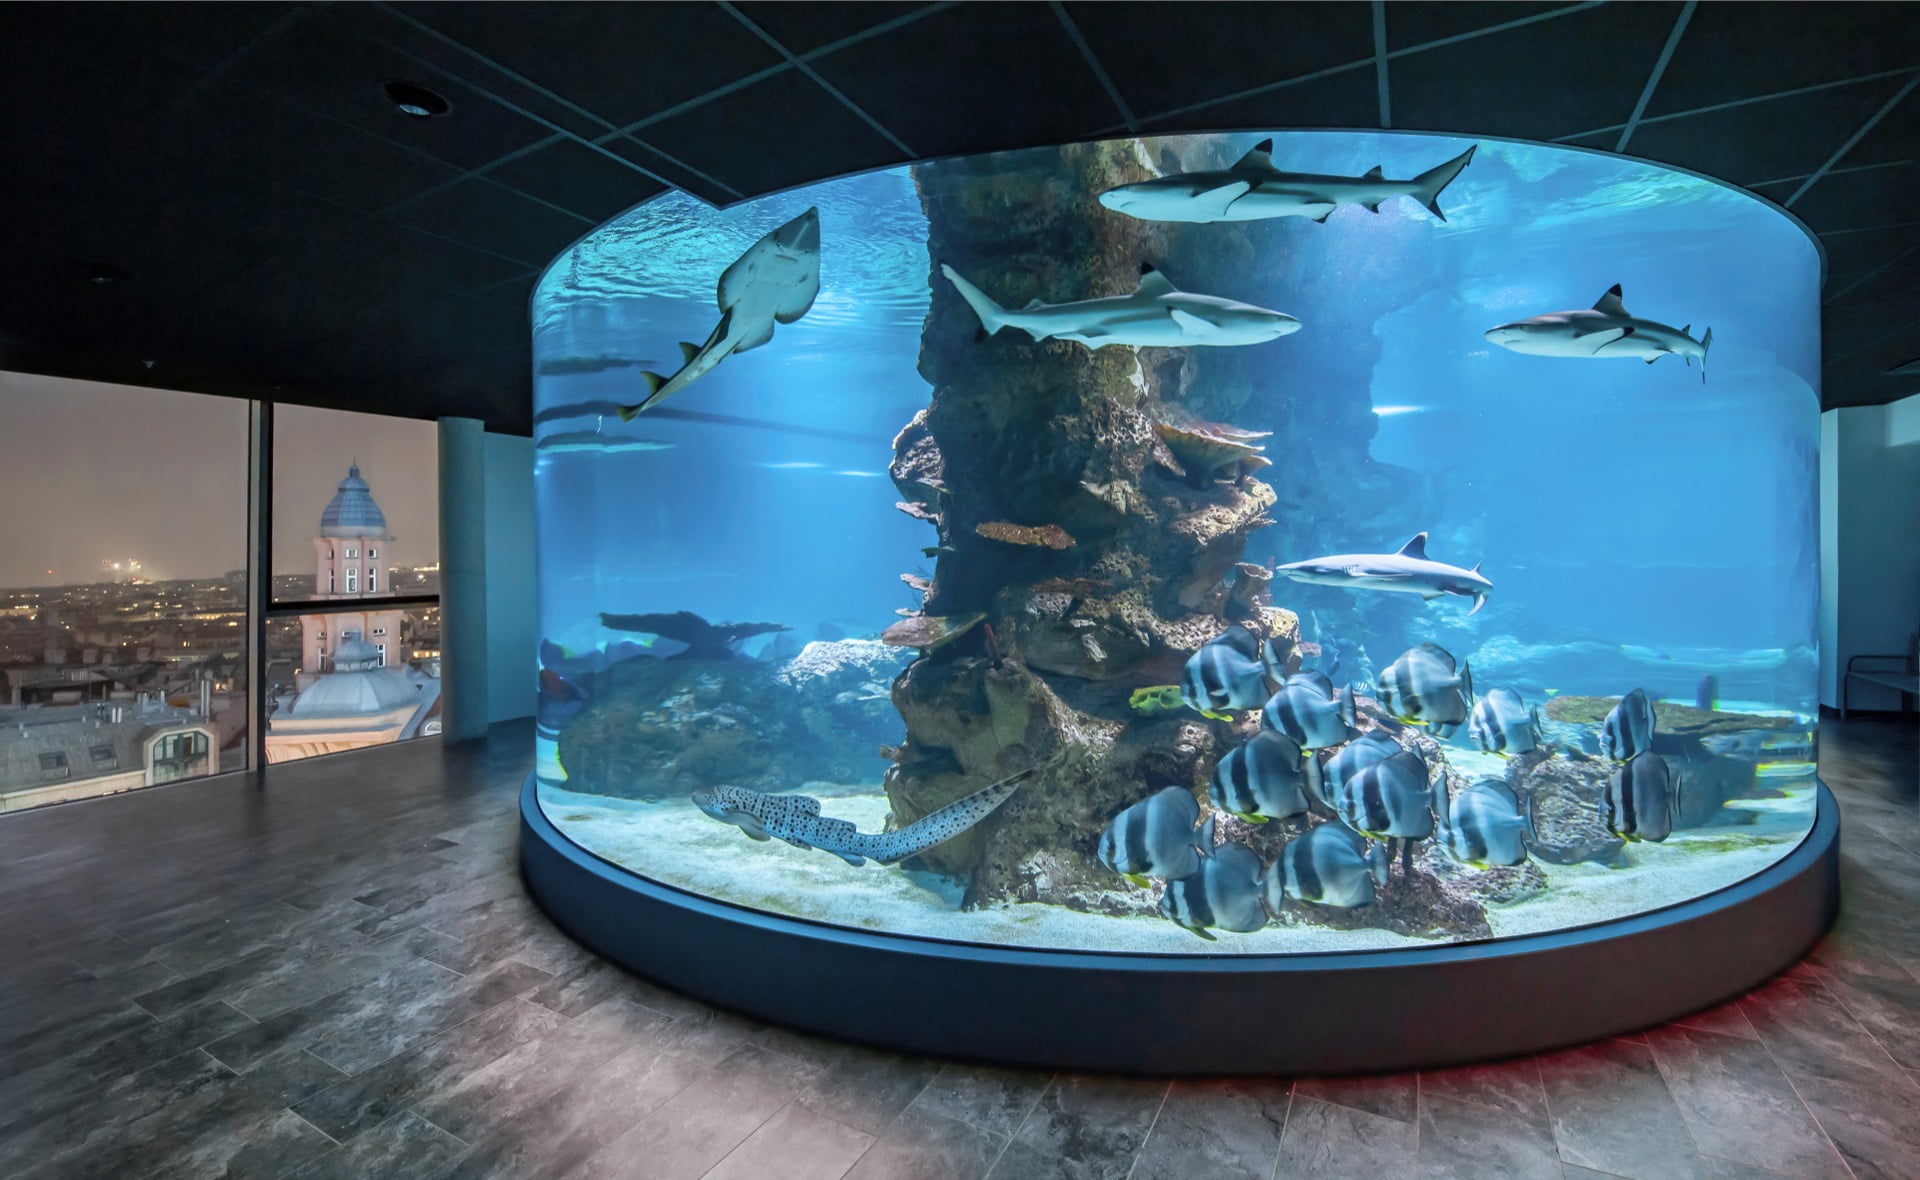 Žraločí podívaná - 360 stupňů podívané na úchvatné žraloky